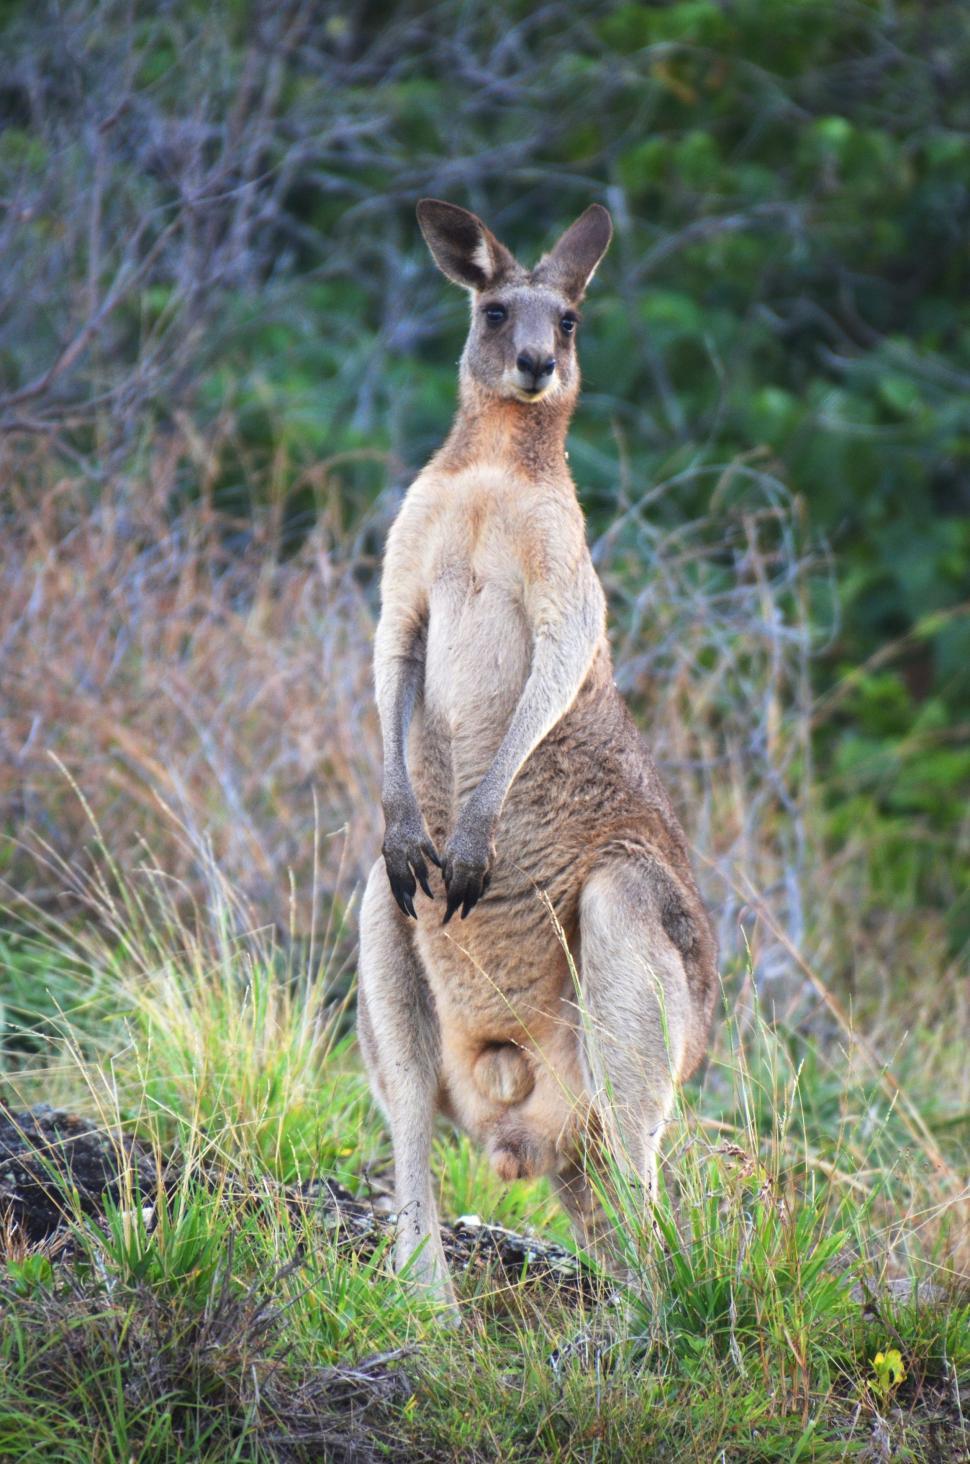 Free Image of Standing Kangaroo  